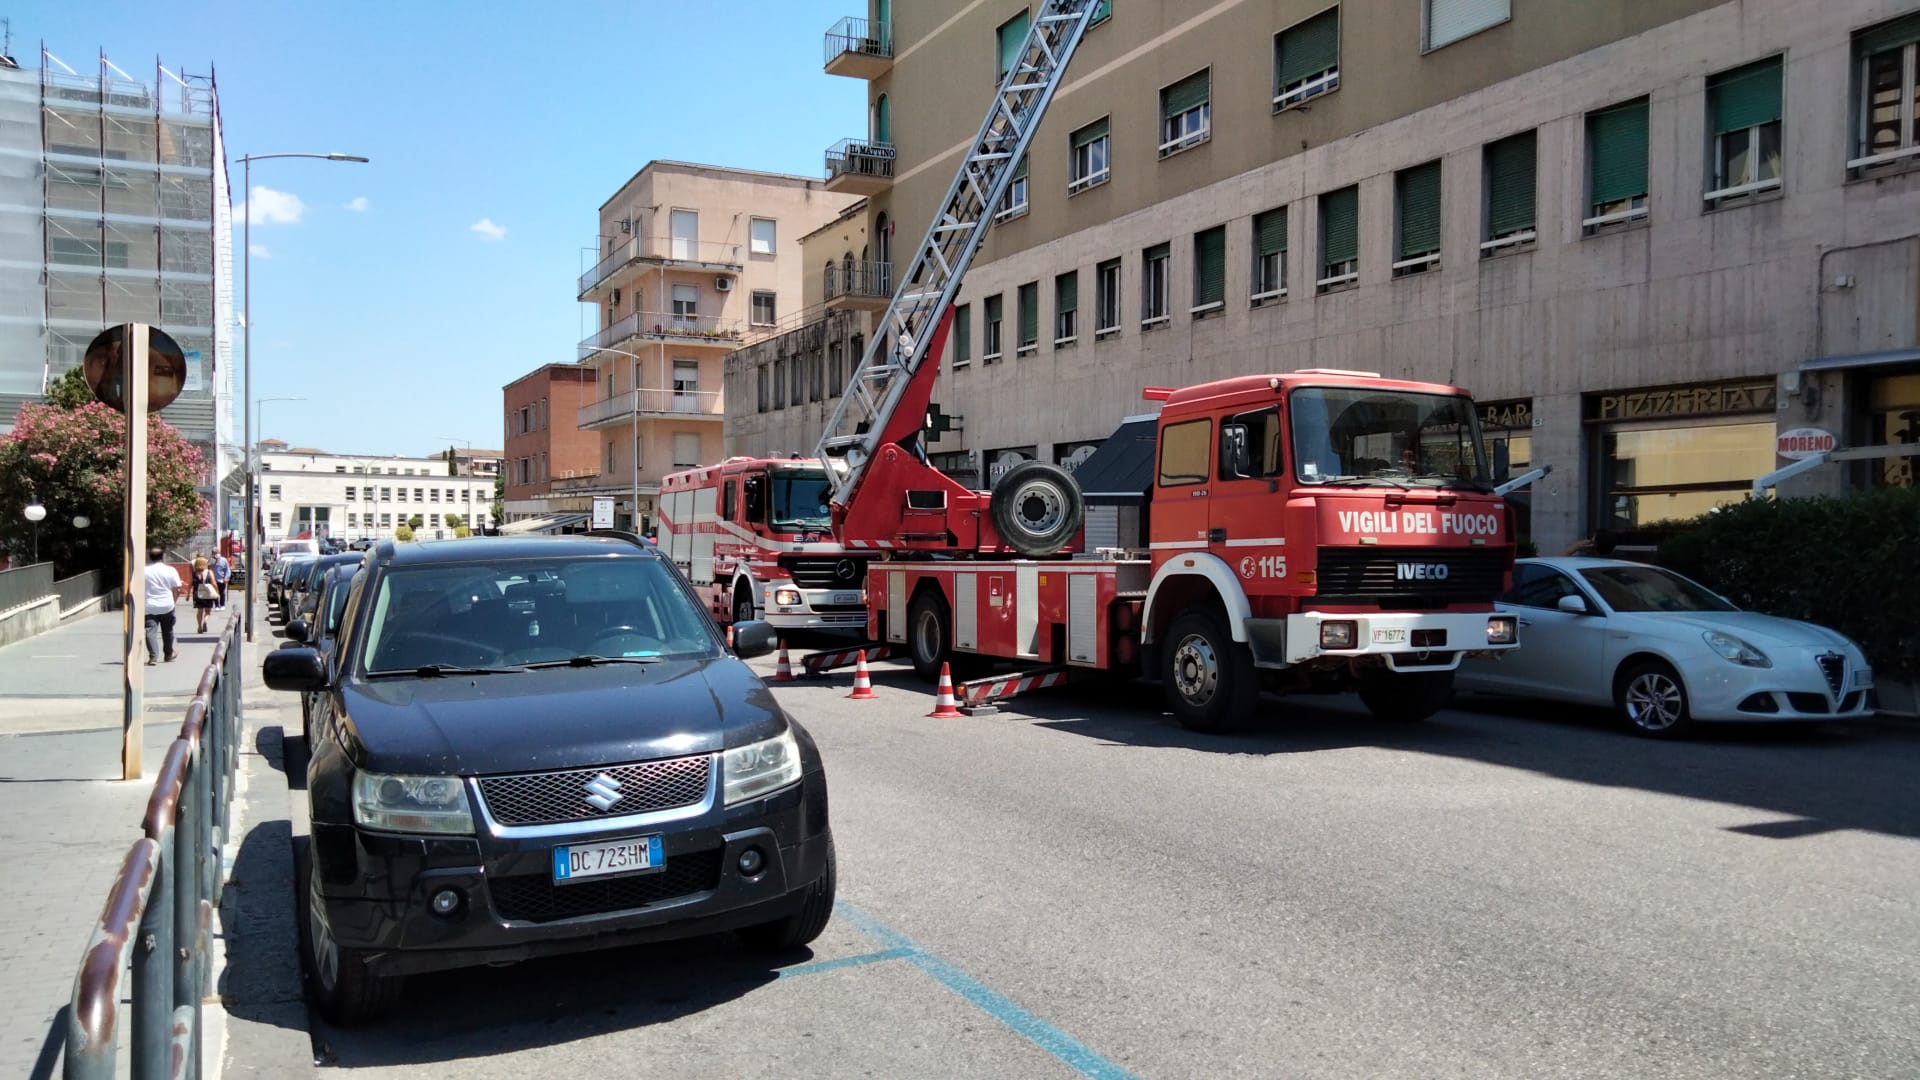 Benevento|Calcinacci in via Perasso, pronto intervento dei Vigili del Fuoco